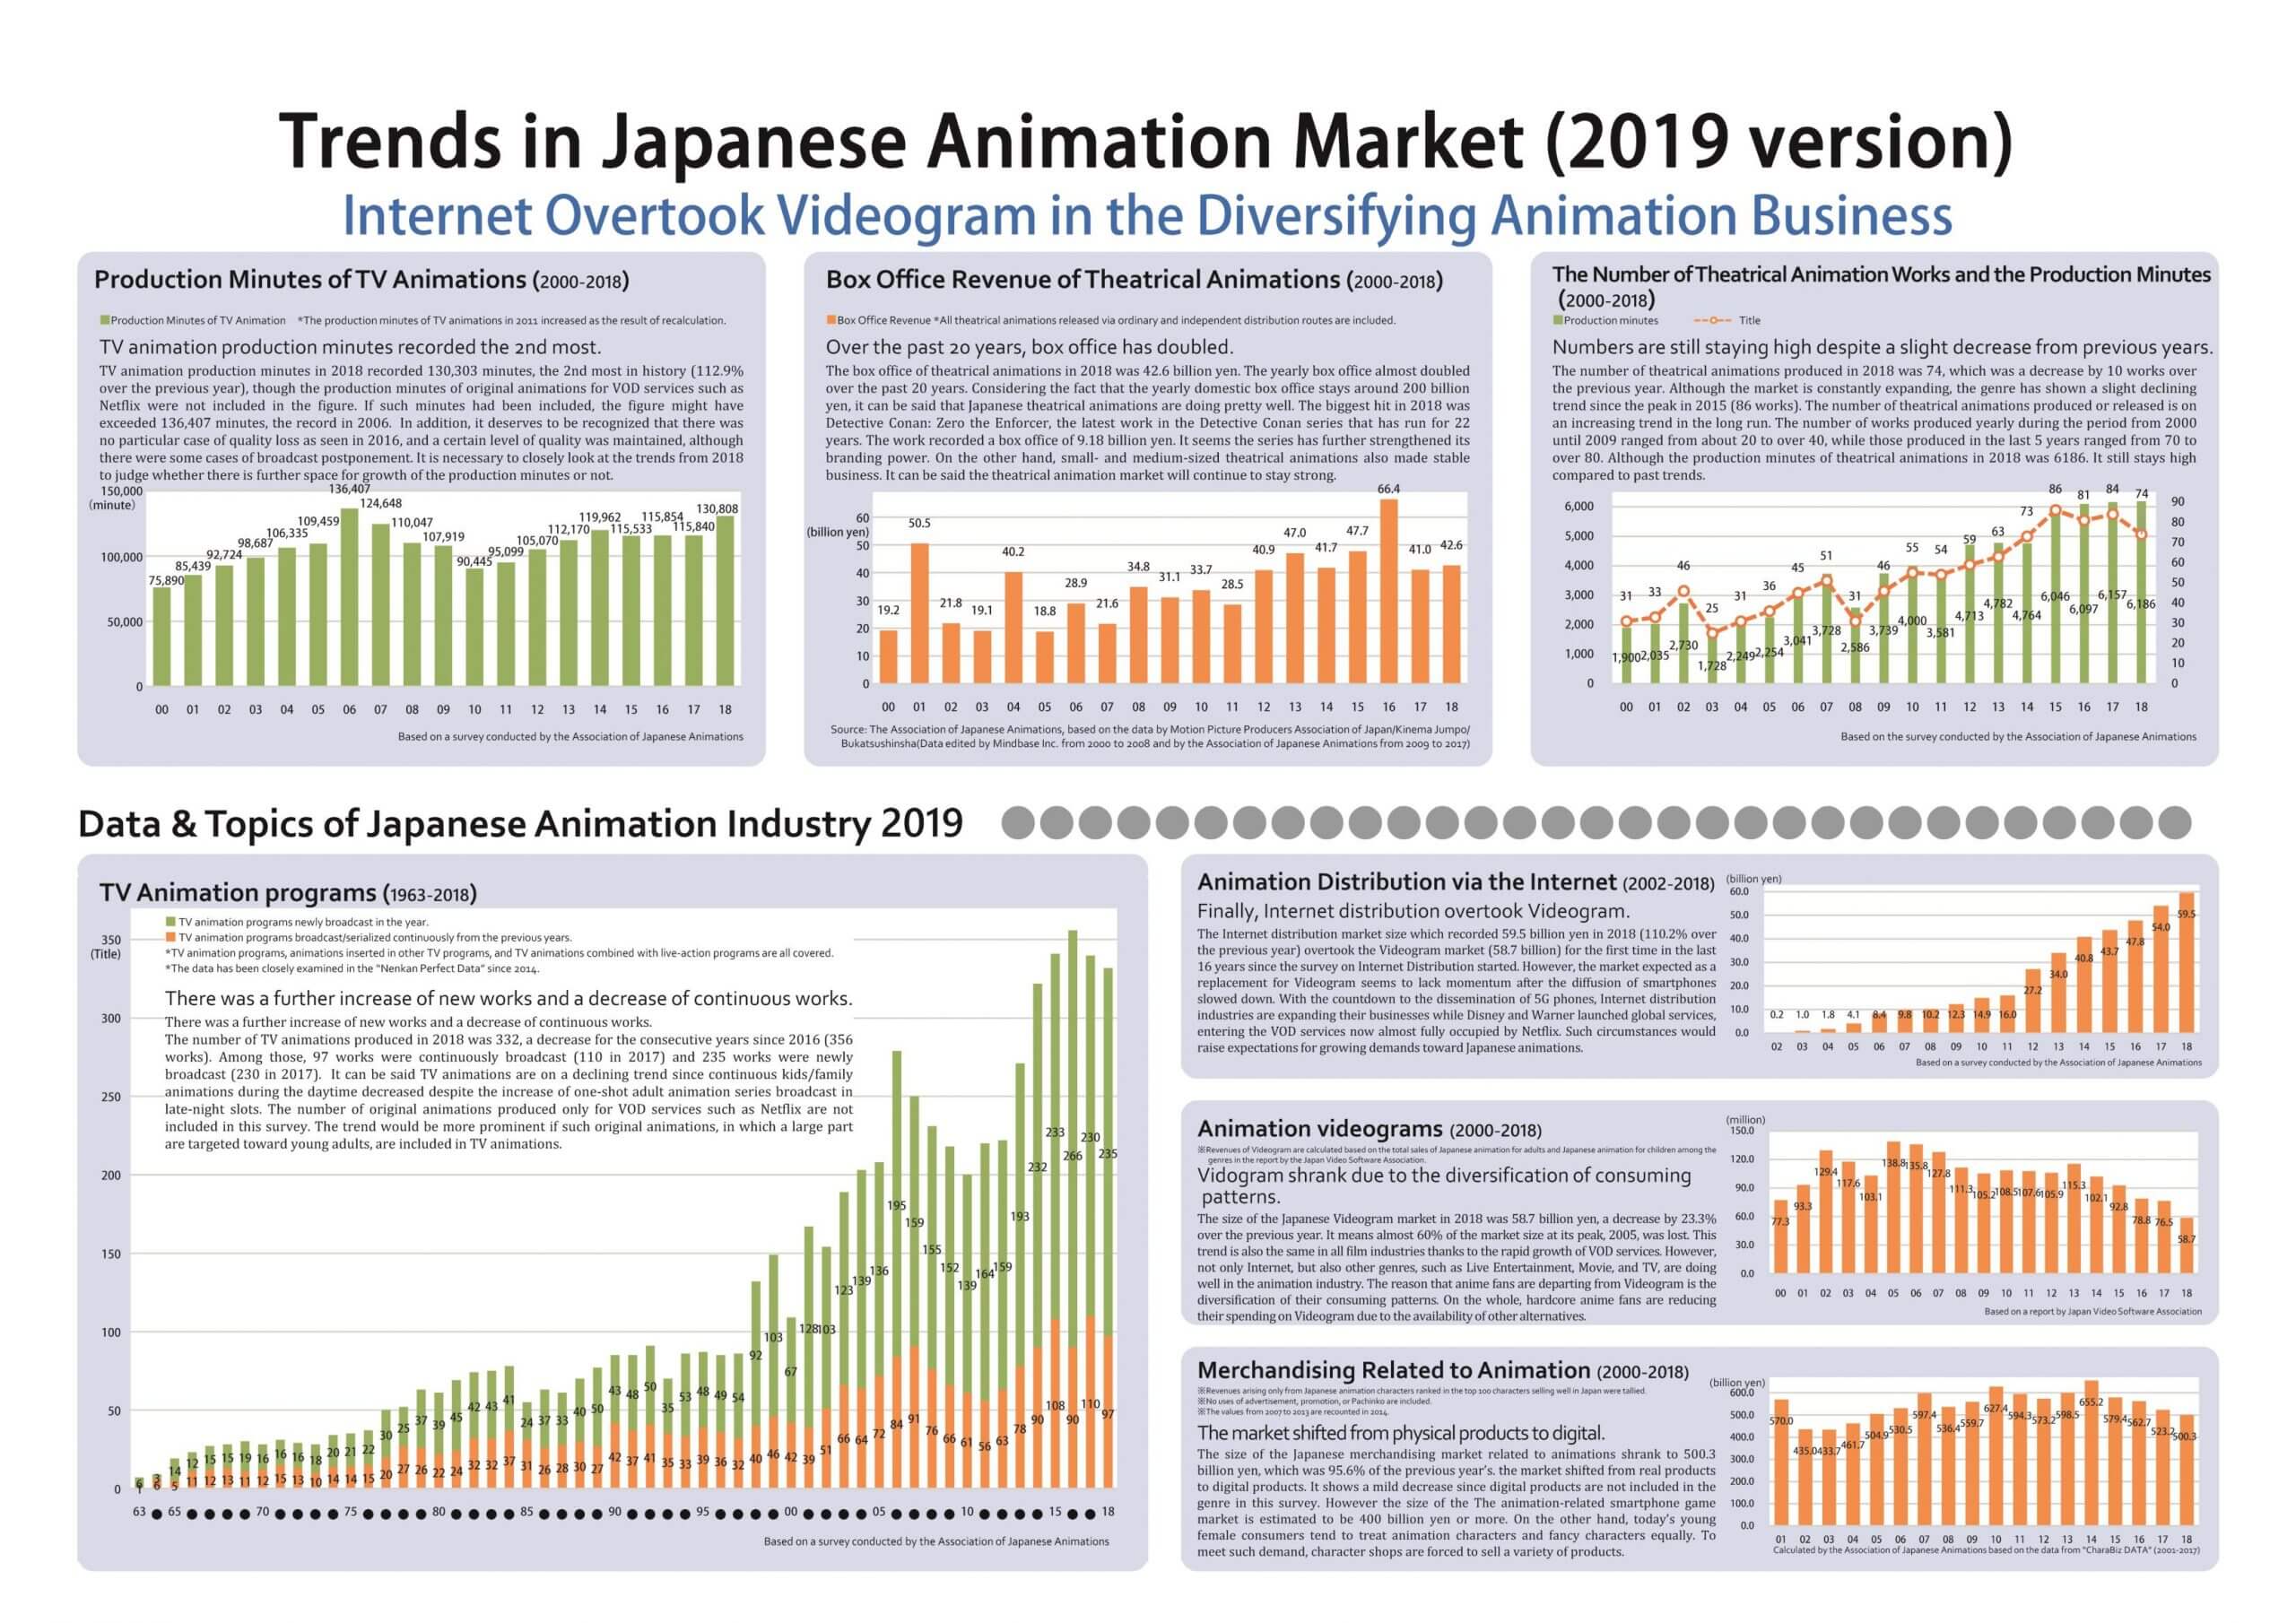 Distribuição de animes online supera vendas de home video no Japão